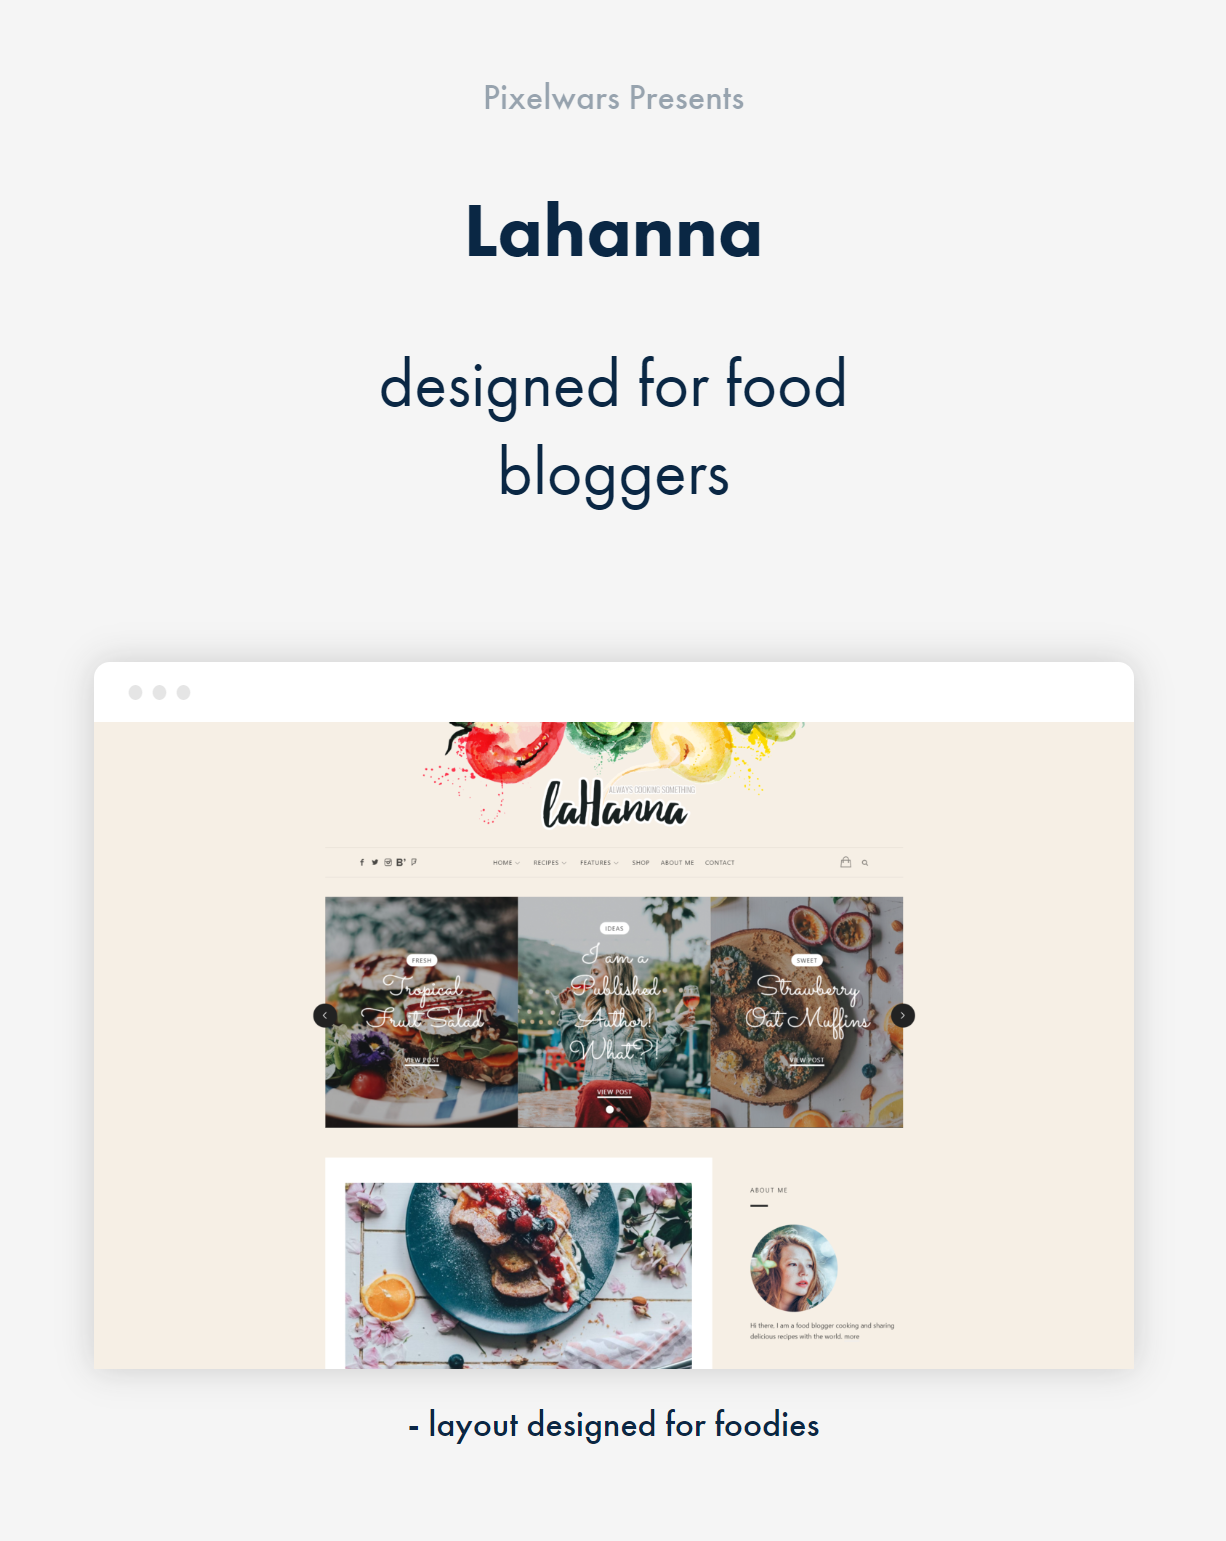 artículo de pixelwars - tema de blog de comida de wordpress de lahanna para blogueros de comida